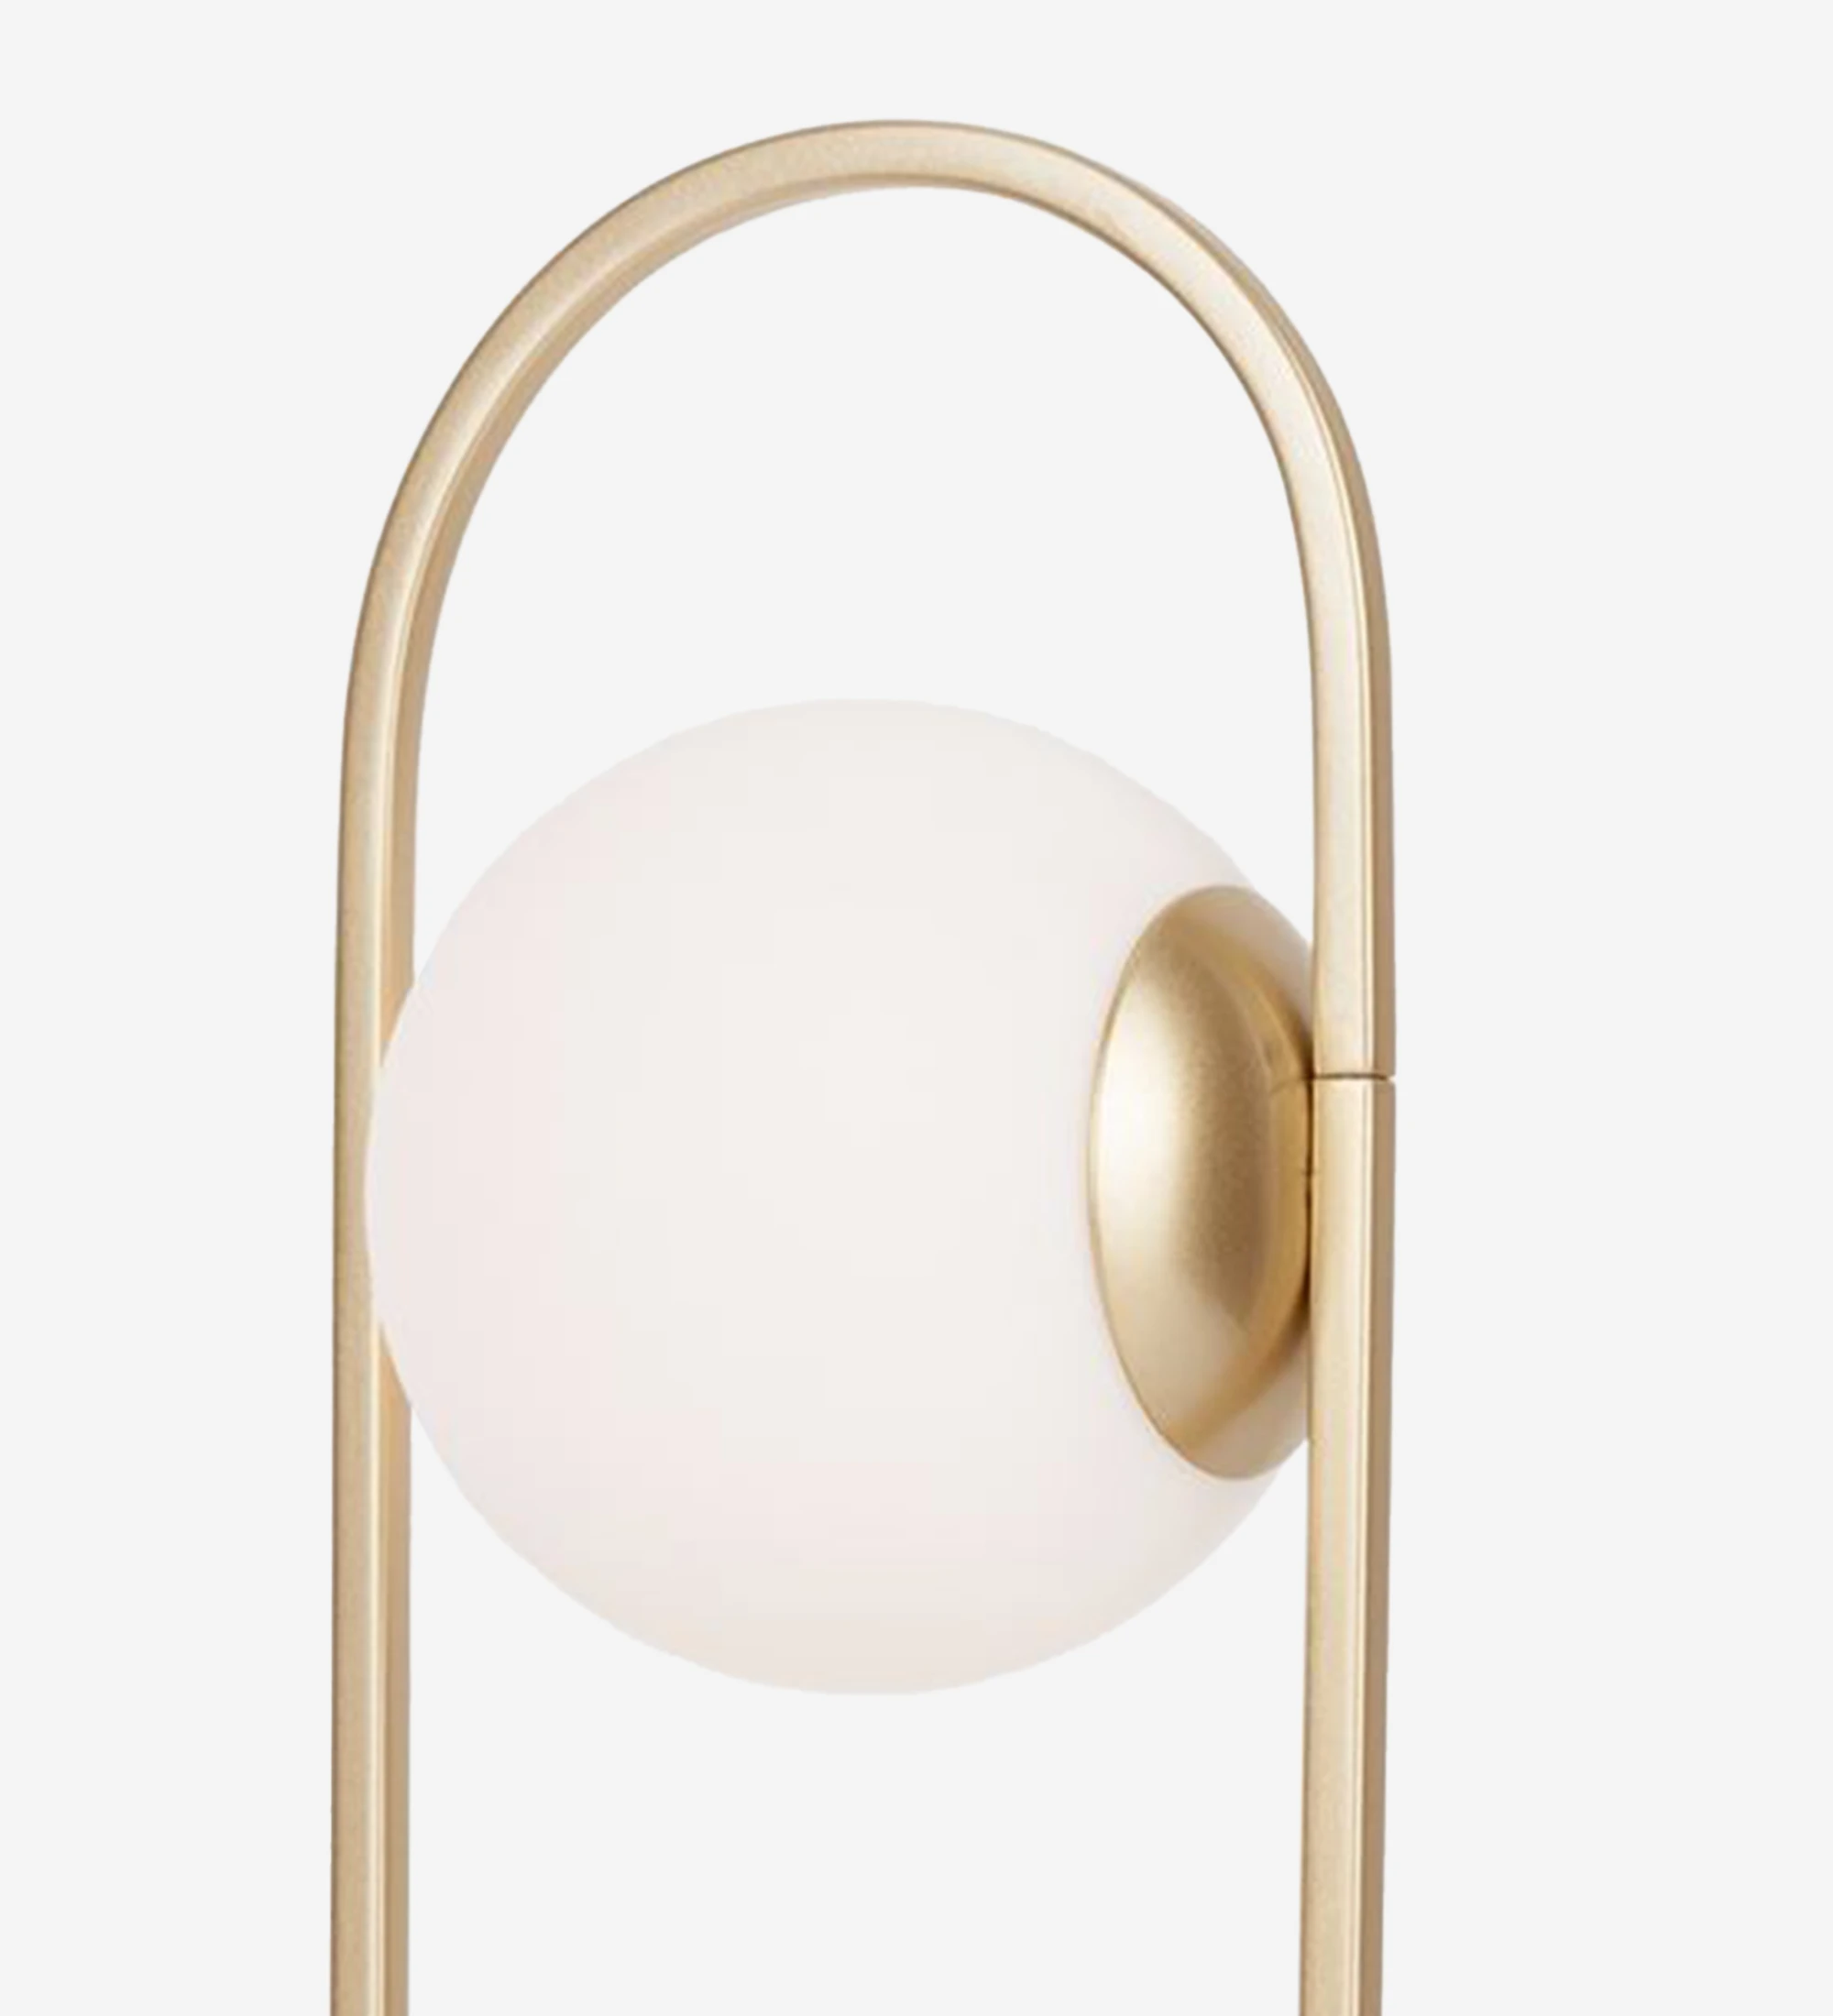  Lampe de table en métal doré avec diffuseur en verre opale.